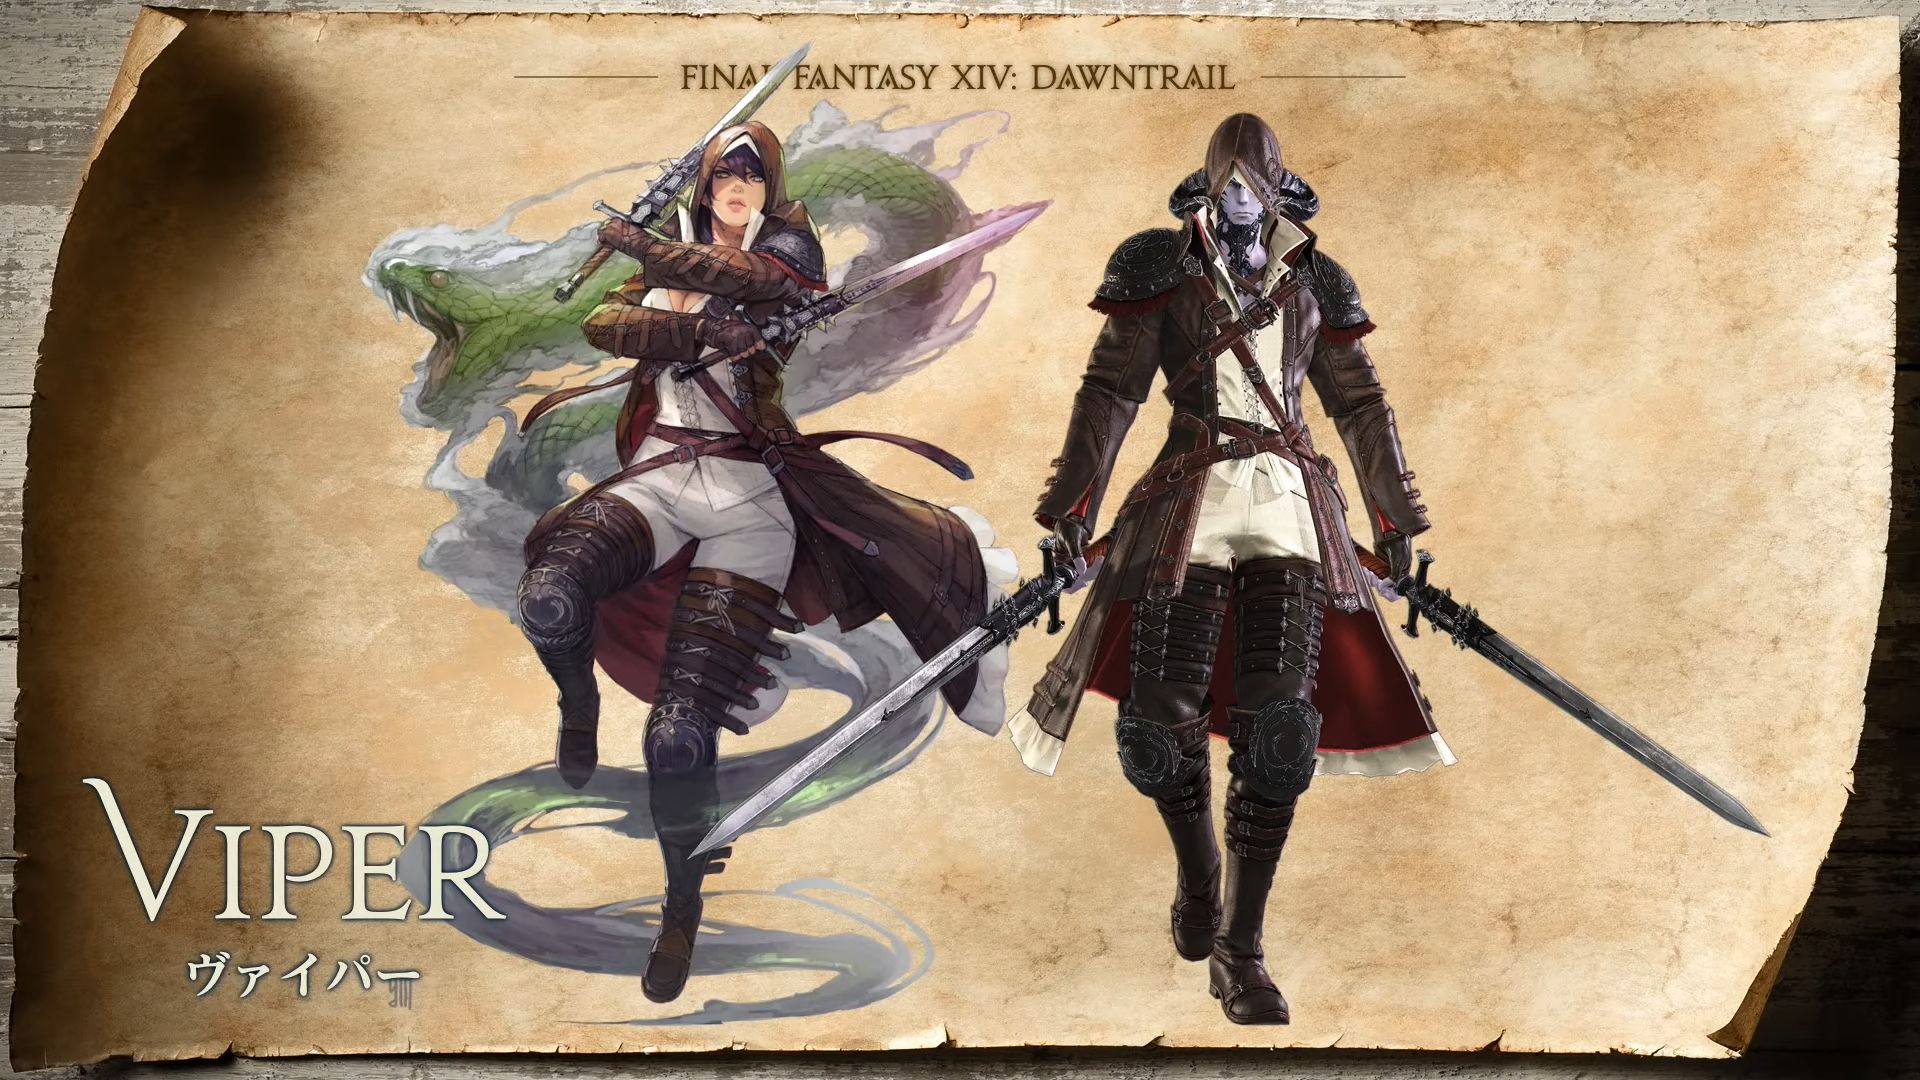 Viper Concept Art Final Fantasy 14: Dawntrail